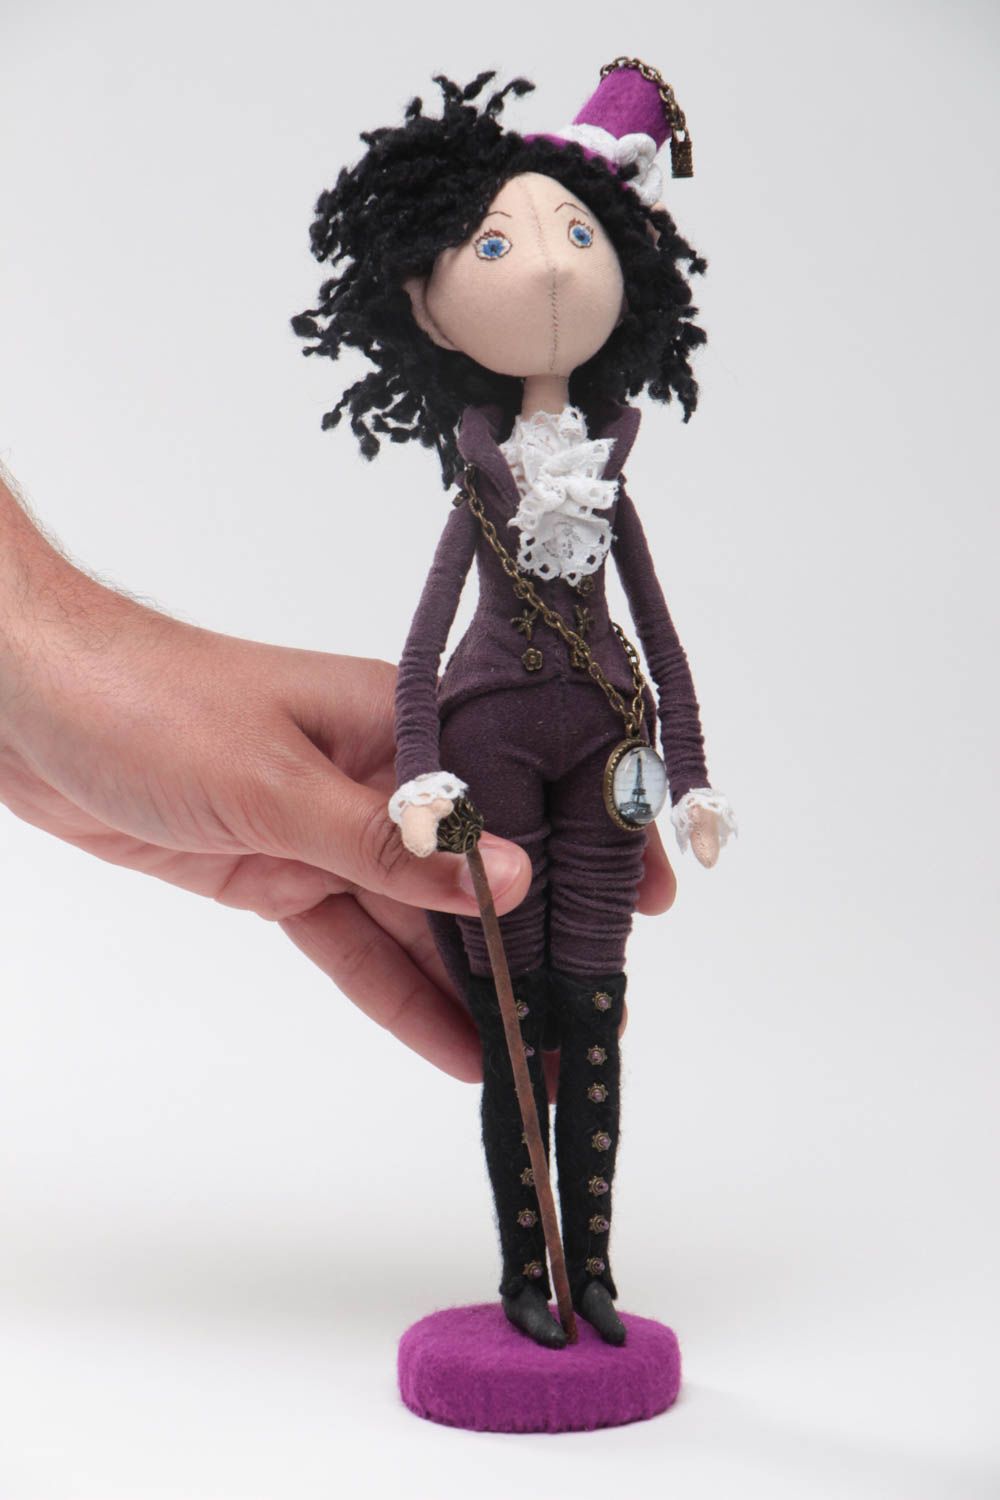 Textil Puppe für Interieur Elf auf Untersetzer aus Stoff handgemacht für Dekor foto 5